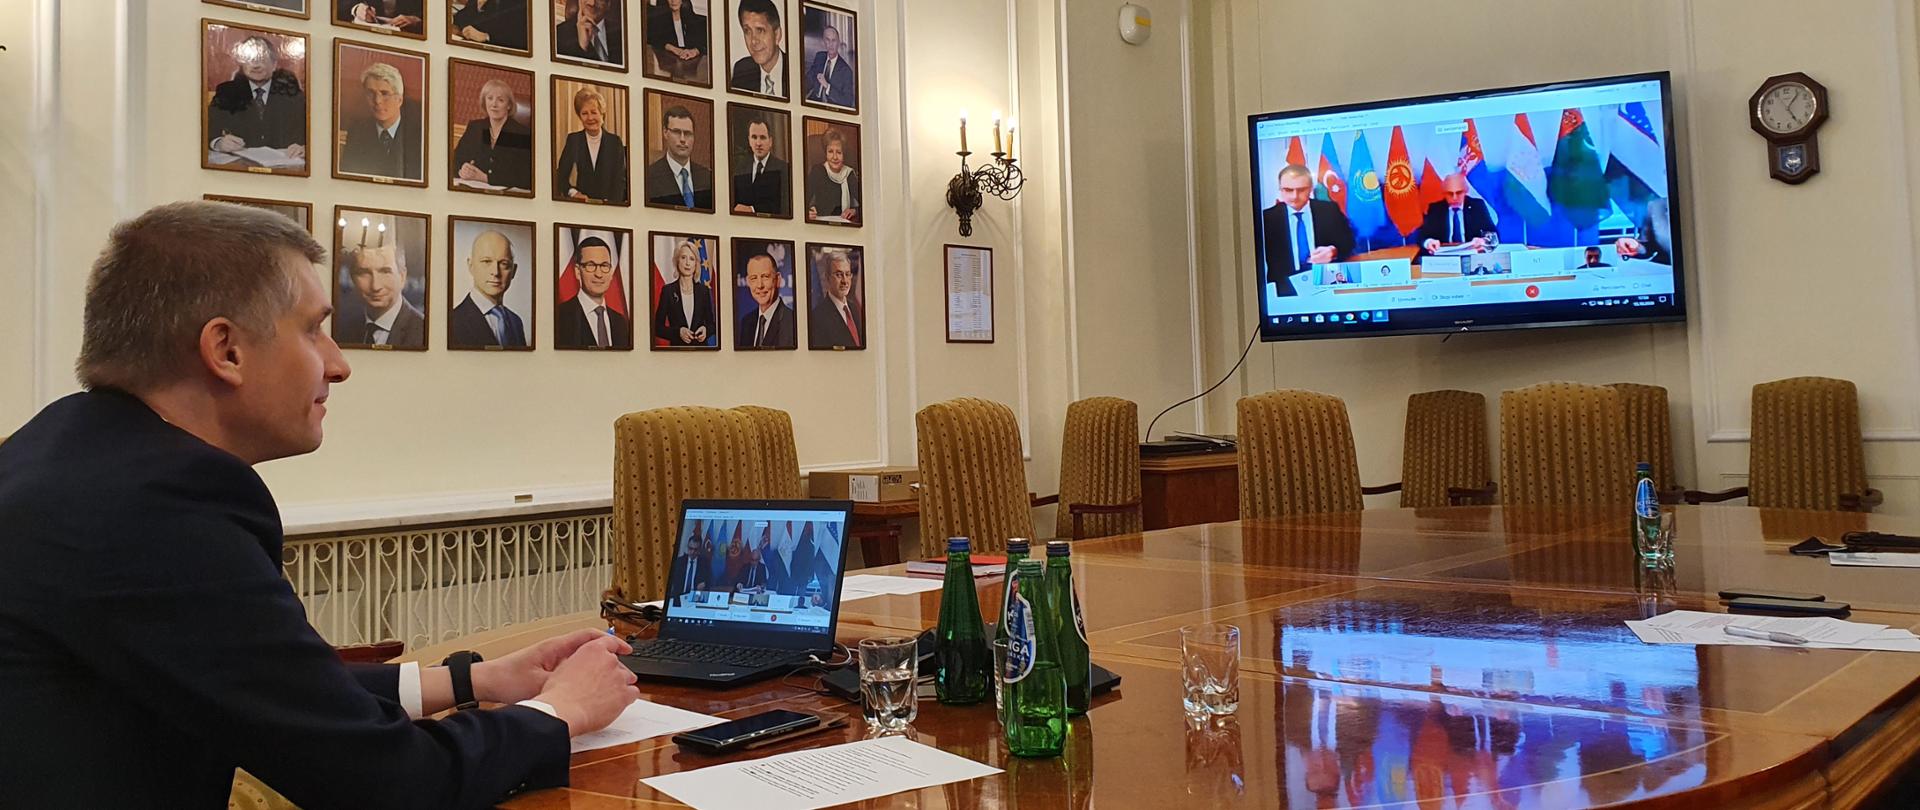 wiceminister Piotr Nowak podczas spotkania Gubernatorów MFW i Banku Światowego, przed nim telebim, na którym widać innych uczestników, na ścianie wiszą portrety polskich ministrów finansów